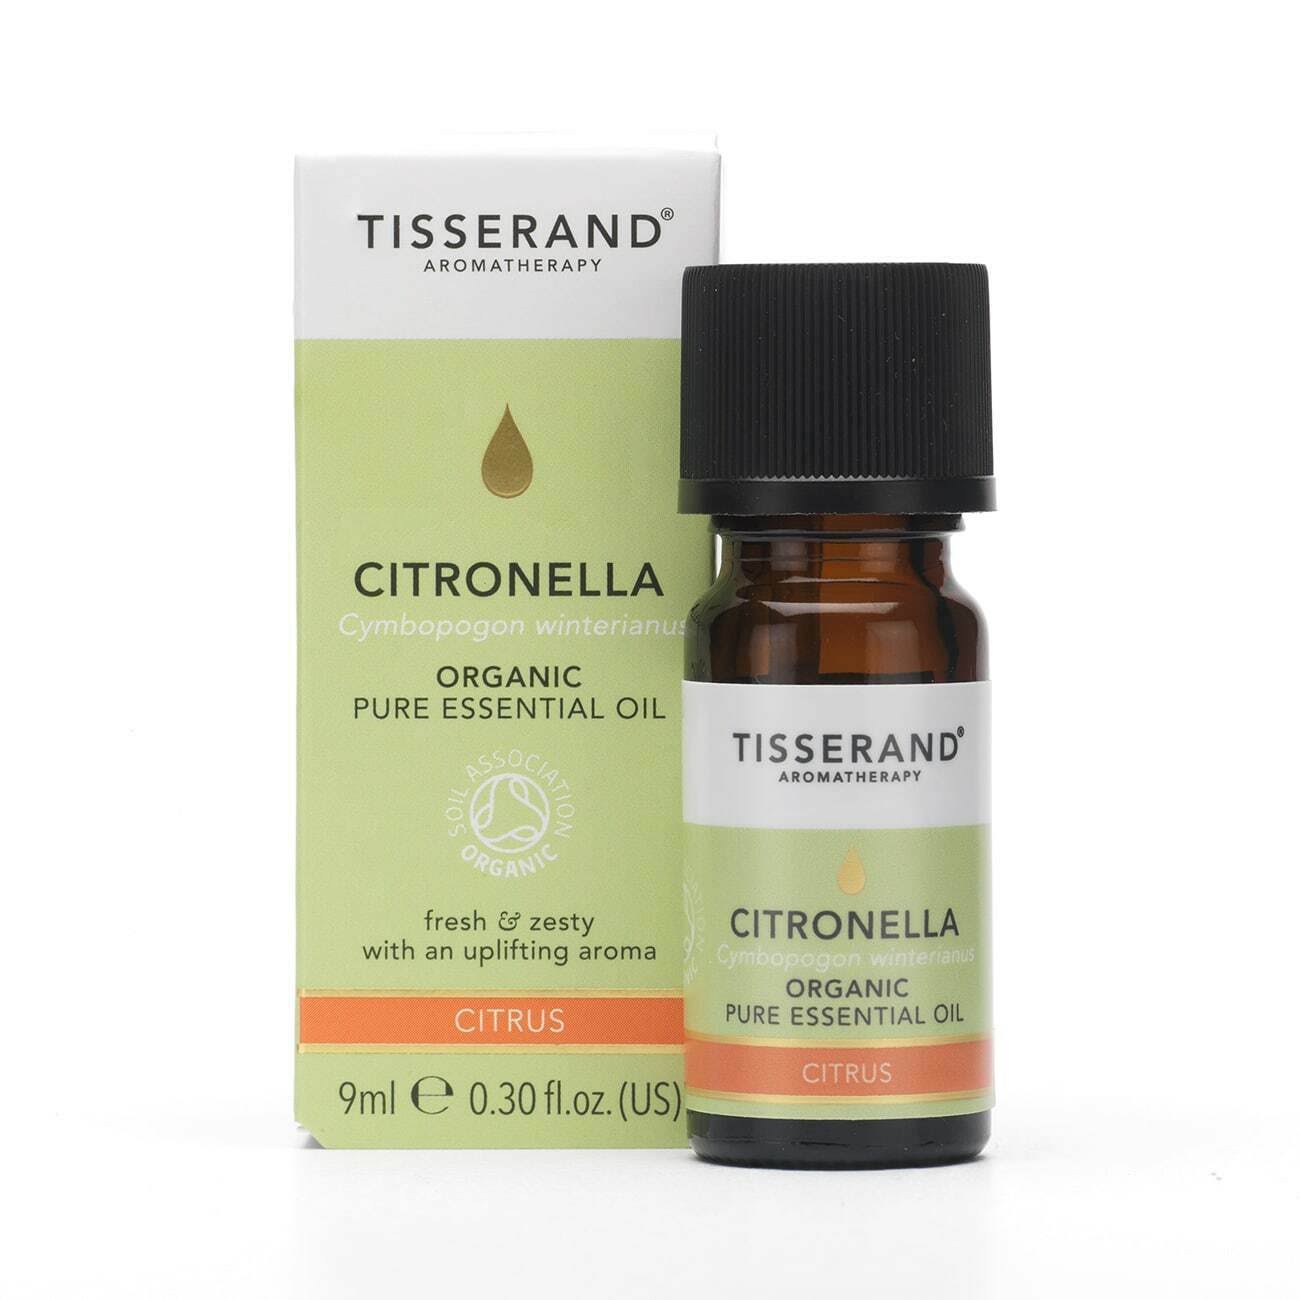 Tisserand Aromatherapy Citronella Organic Essential Oil 9ml